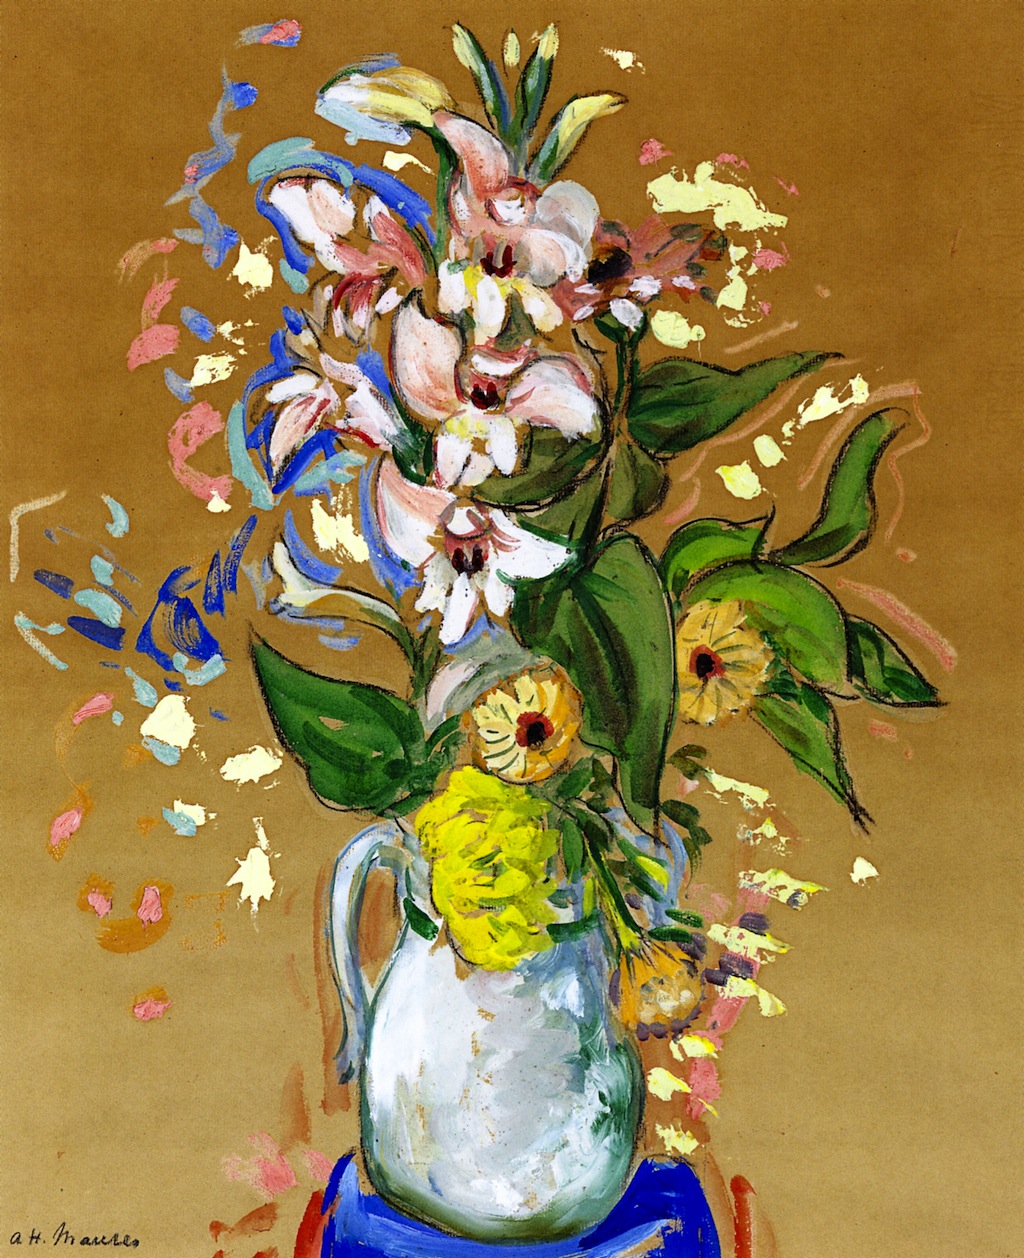 花瓶里的花 立体主义静物画 阿尔弗雷德 亨利 毛雷尔 美术作品 路艺美术